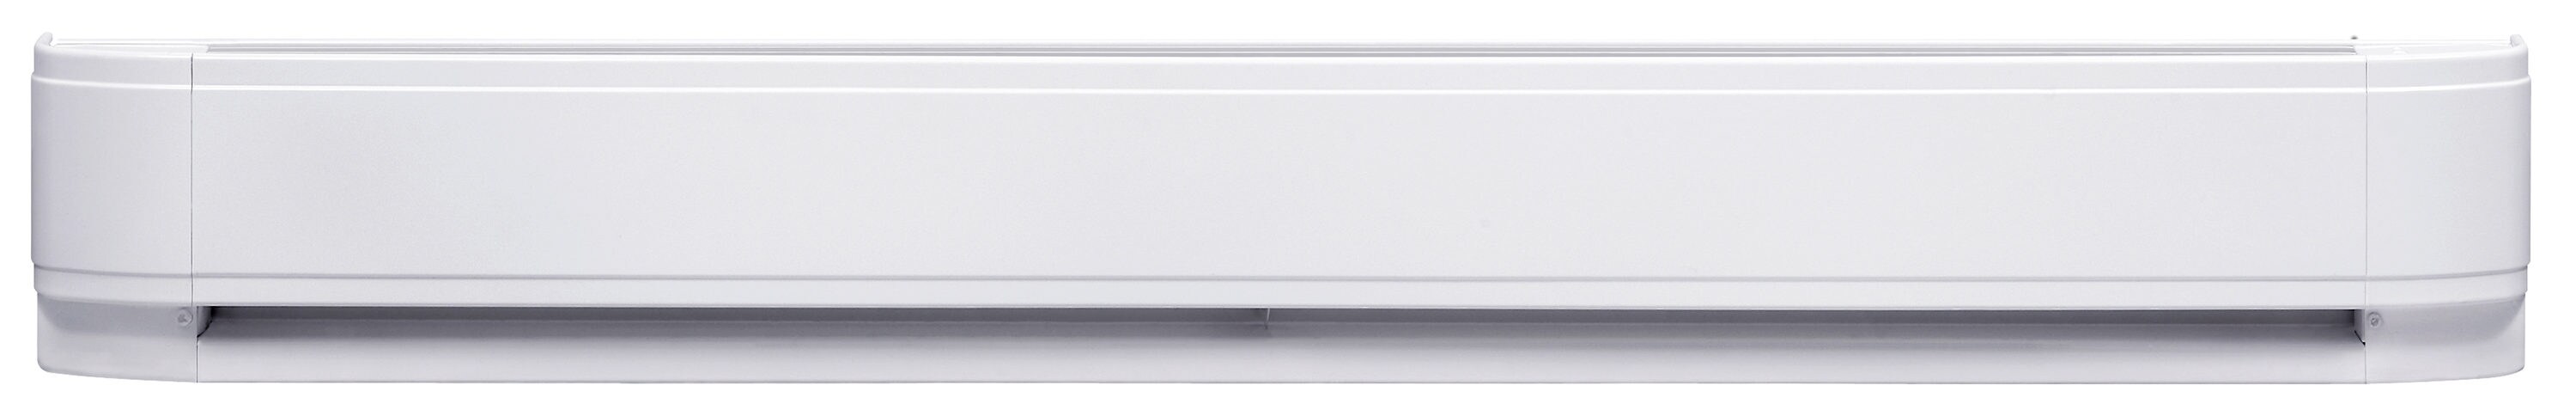 Tropisch Pijlpunt Moreel onderwijs Dimplex 60-in 240-Volt 2500-Watt Standard Electric Baseboard Heater at  Lowes.com